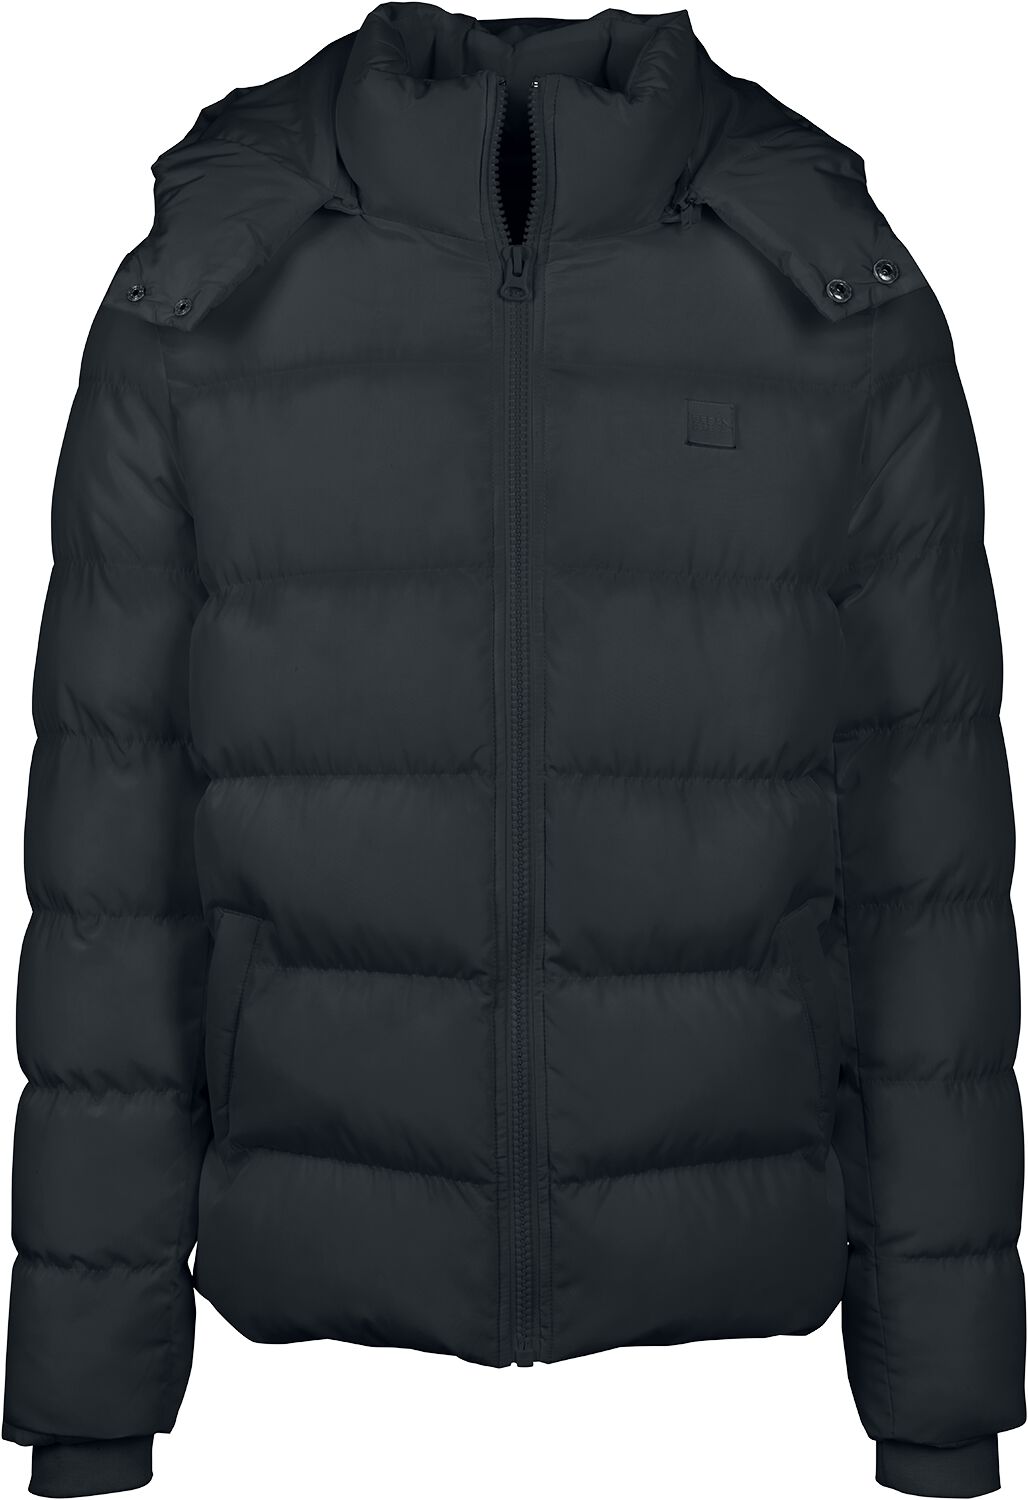 Urban Classics Übergangsjacke - Hooded Puffer Jacket - L bis 5XL - für Männer - Größe 4XL - schwarz